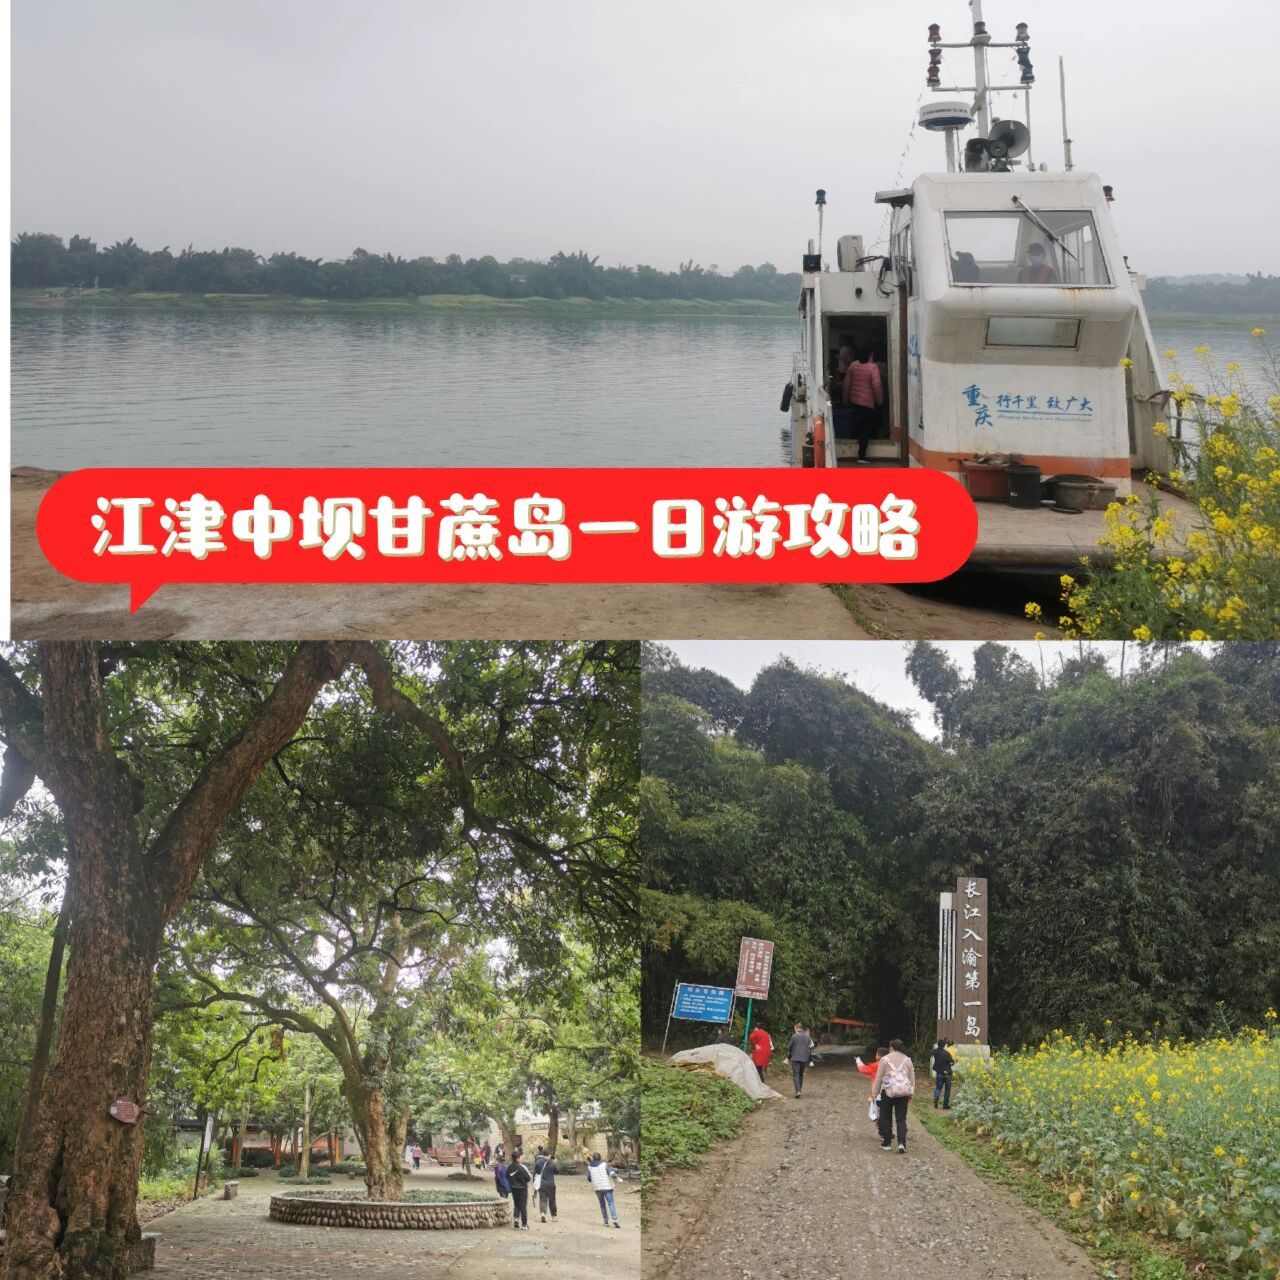 江津中坝岛五福庄园图片